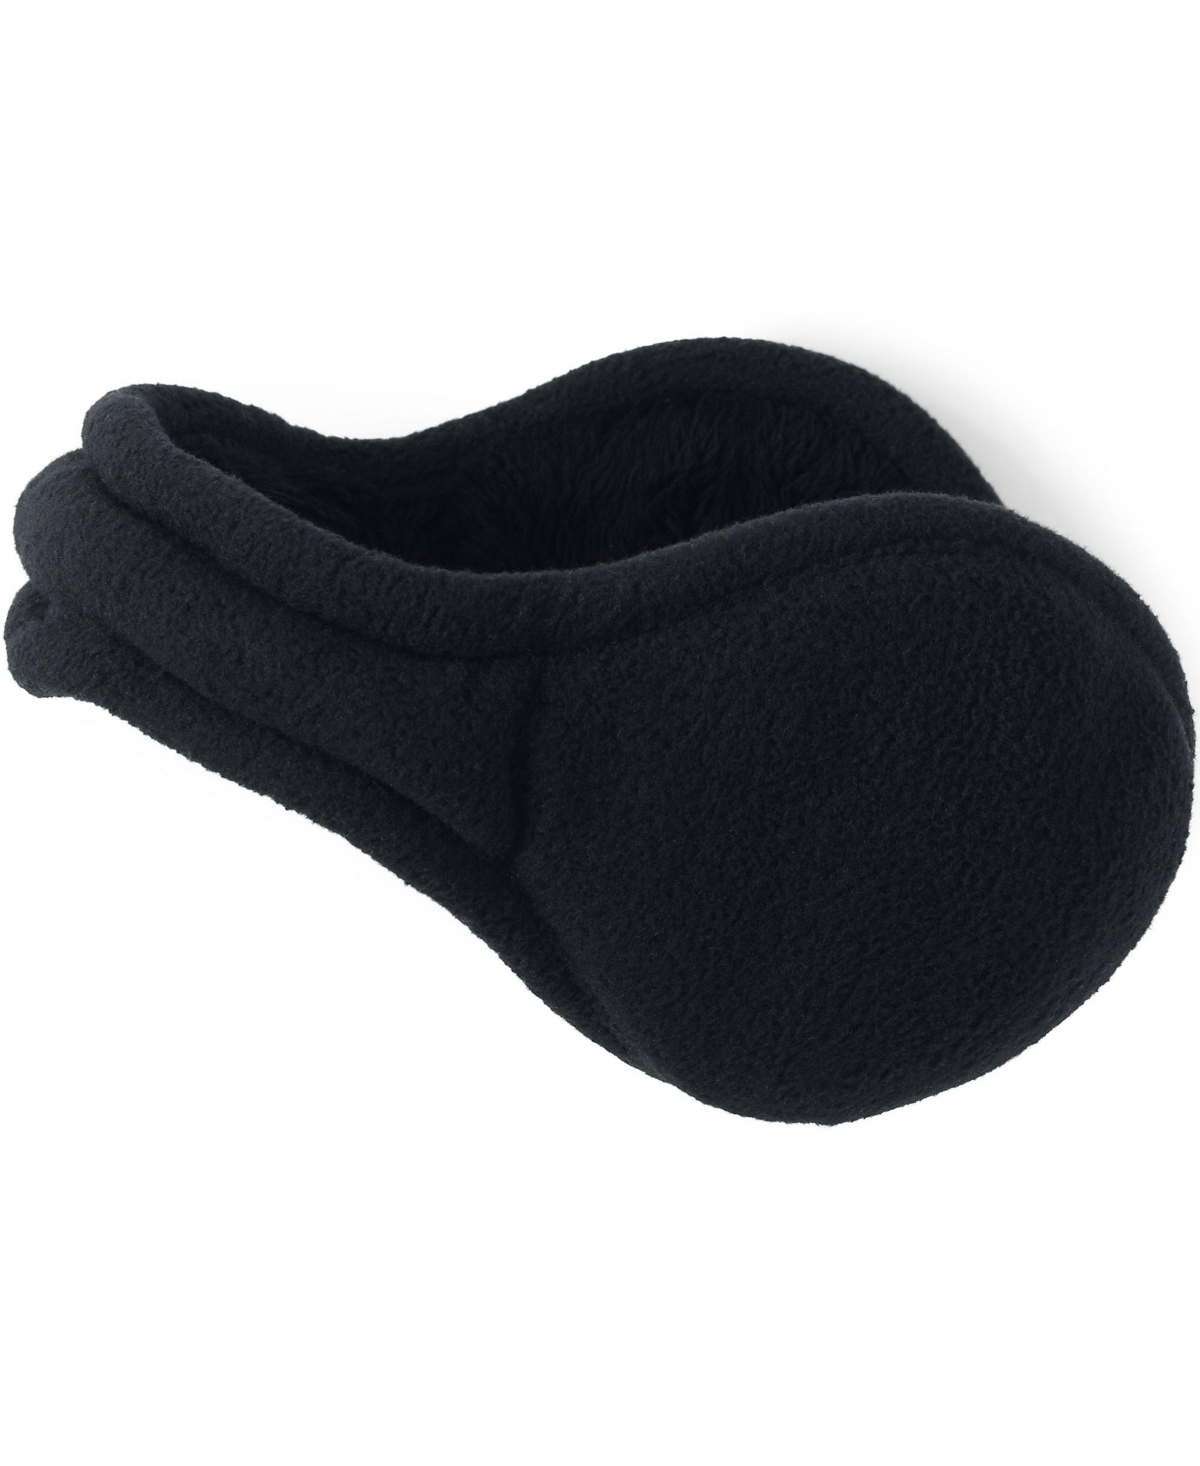 Women's Adjustable Fleece Winter Earmuffs - Black